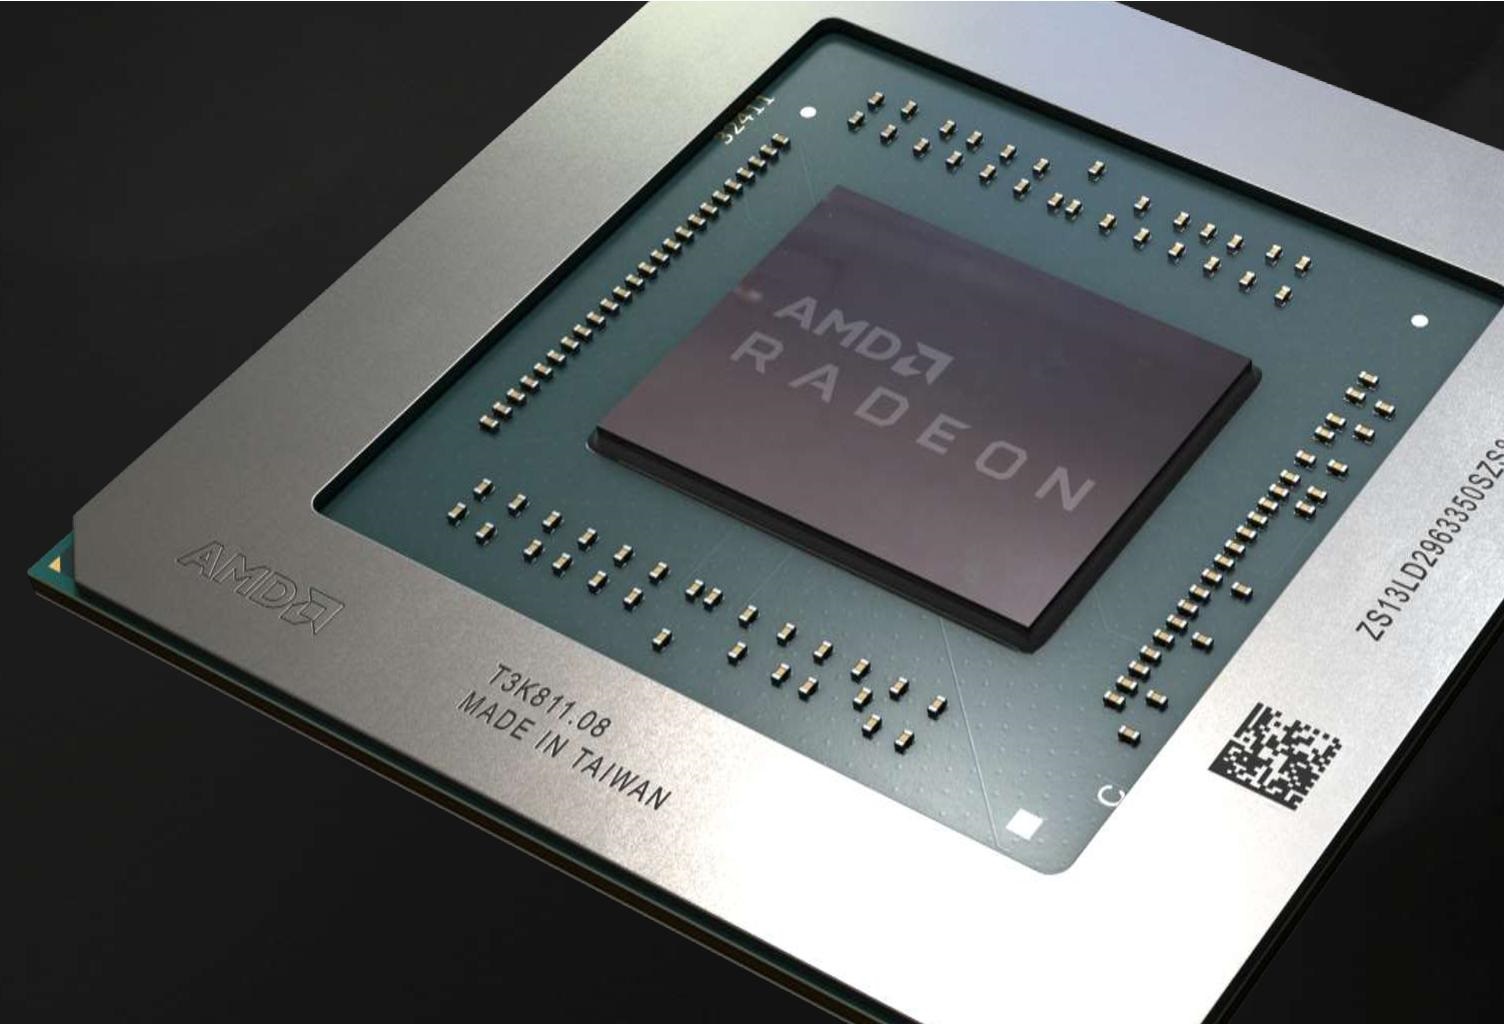 AMD referans tasarım RX 5700 serisi üretmeye devam edecek